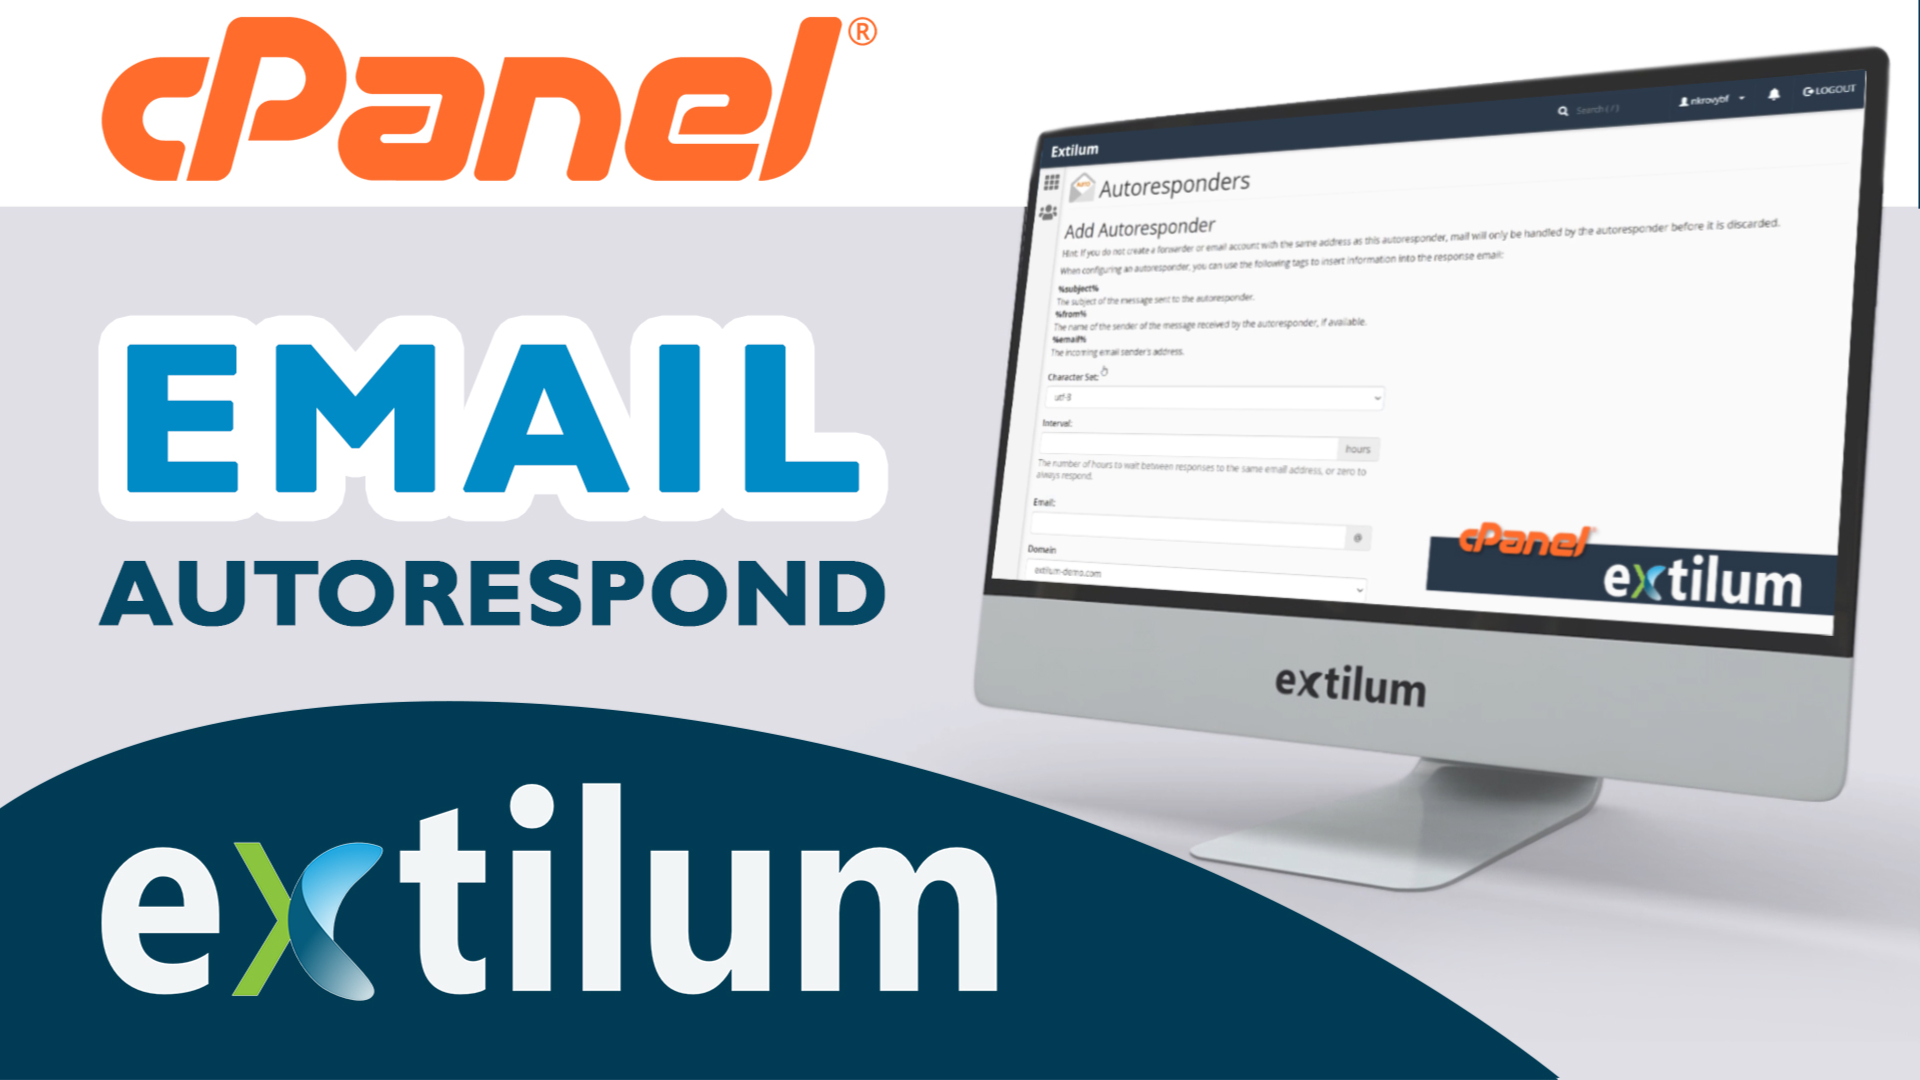 Extilum cPanel - Email Autoresponders